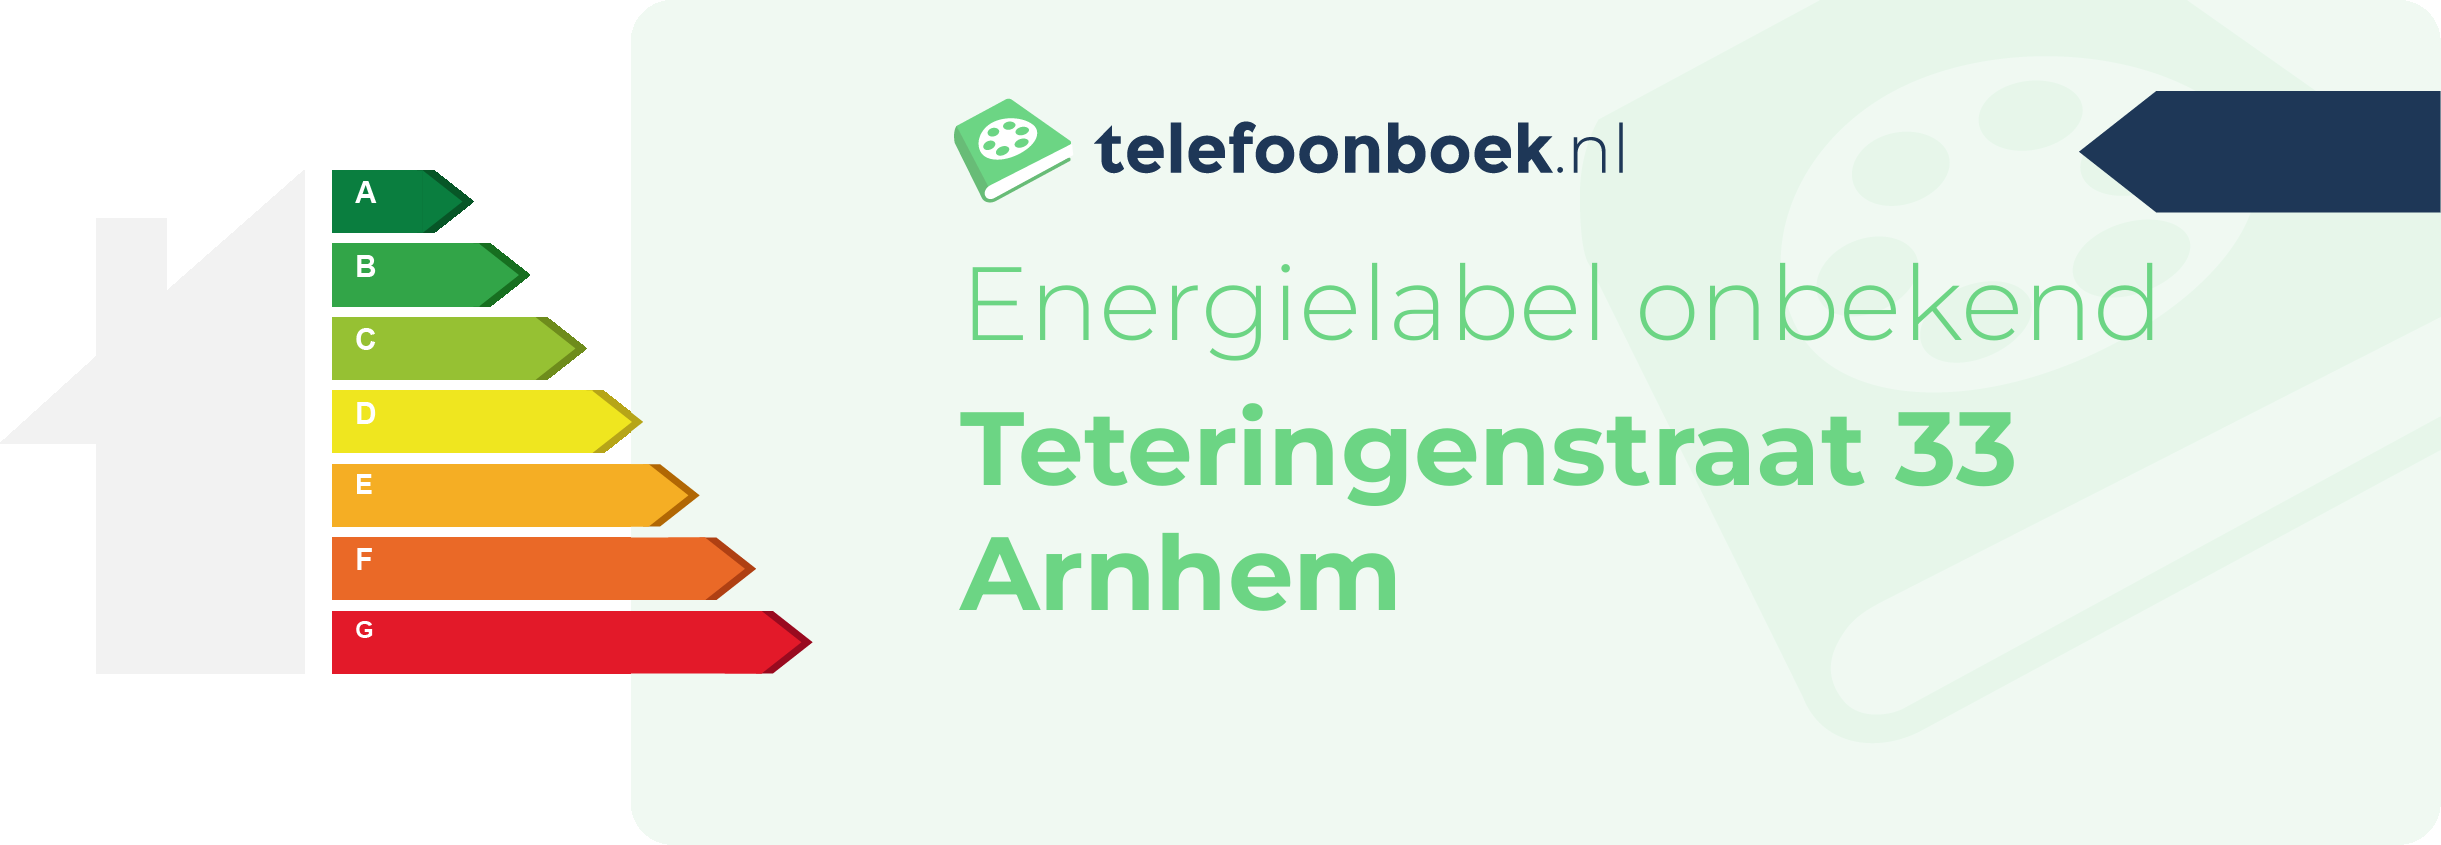 Energielabel Teteringenstraat 33 Arnhem